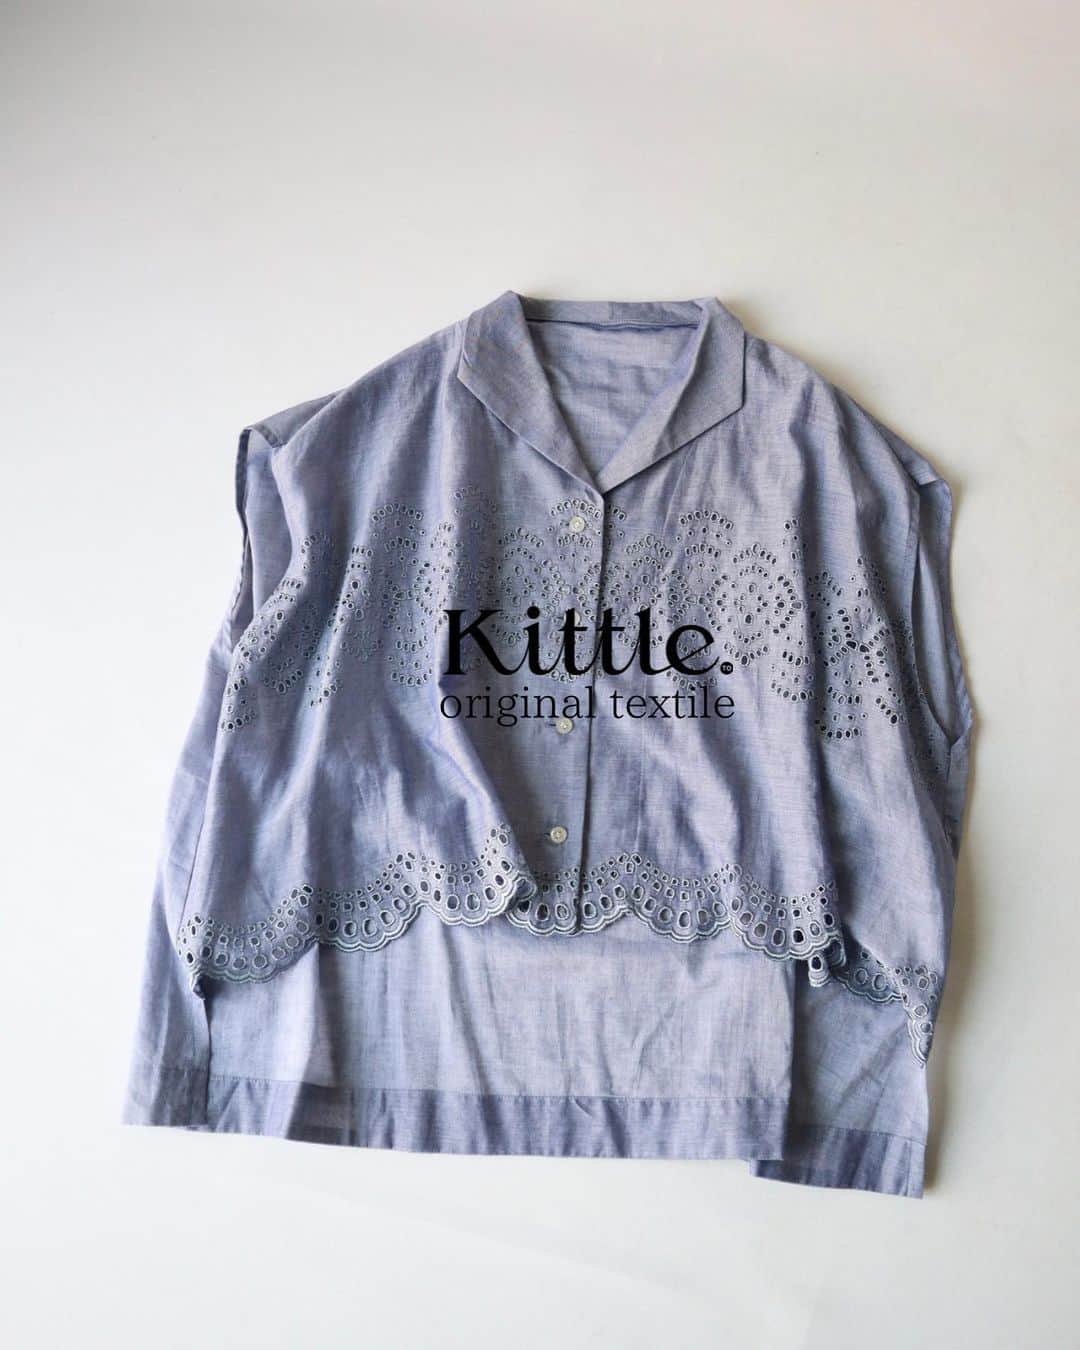 kittleのインスタグラム：「Kittle.original textile ⁡ 前後差がある着丈になっており、後ろは160cmでヒップが少し隠れる長さです。ベスト感覚でもご着用いただけます。夏は1枚でさらっと◎。気になる二の腕が隠れる袖丈もうれしいポイントです。  ↓新作 itemもお得に買えるチャンスです♪ ●LINE友達追加しますと、オンラインストア限定のお得なクーポンもらえます♪ https://lin.ee/Cc44uMv ⁡ #kittle #kittleto ⁡ 【𝗈𝗇𝗅𝗂𝗇𝖾 𝗌𝗍𝗈𝗋𝖾】 𝗁𝗍𝗍𝗉𝗌://𝗄𝗂𝗍𝗍𝗅𝖾𝗍𝗈.𝖼𝗈𝗆 𝖭𝖾𝗐 𝖺𝗋𝗋𝗂𝗏𝖺𝗅𝗌 →𝖤𝗏𝖾𝗋𝗒 𝖥𝗋𝗂𝖽𝖺𝗒 𝖯𝖬𝟩」